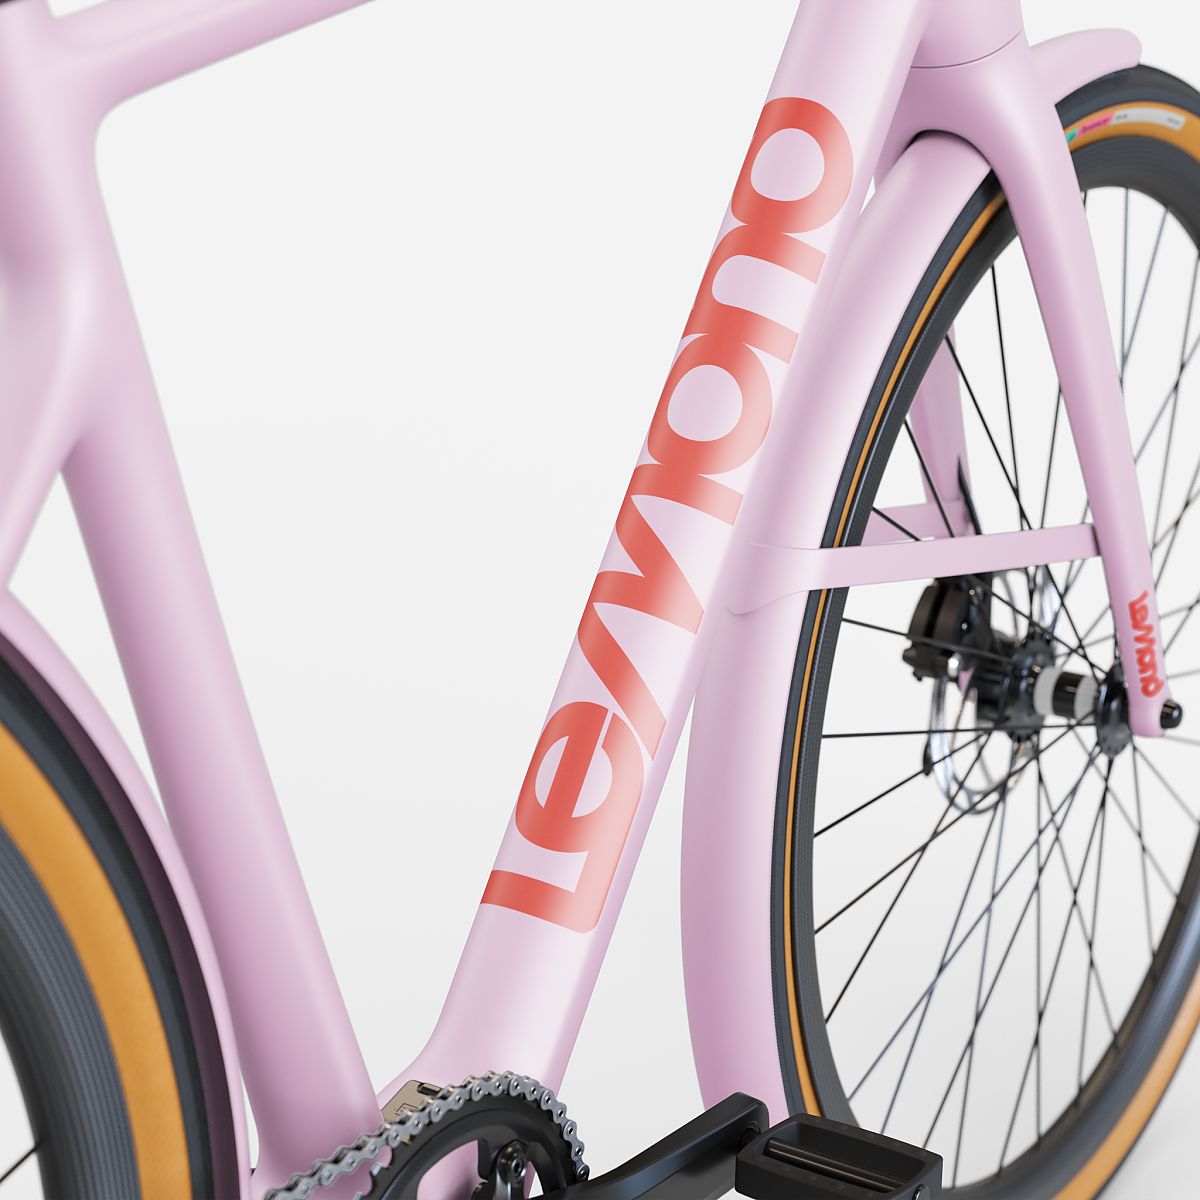 lemond bikes 2020